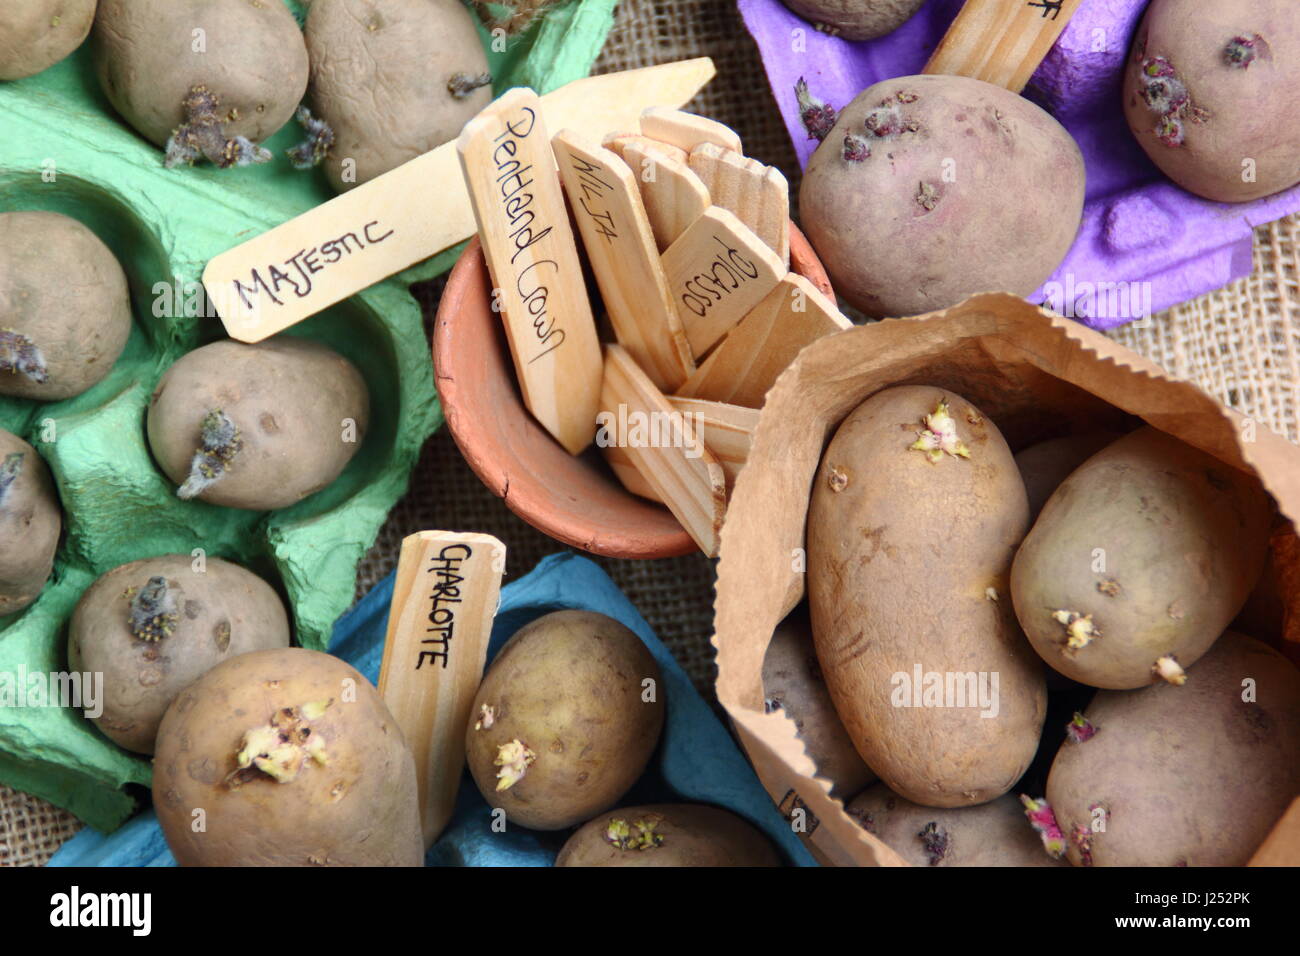 Les plants de pommes de terre appelée chitting à egg fort à l'intérieur des conteneurs, afin d'encourager une forte avant de les planter en germes dans potager Banque D'Images